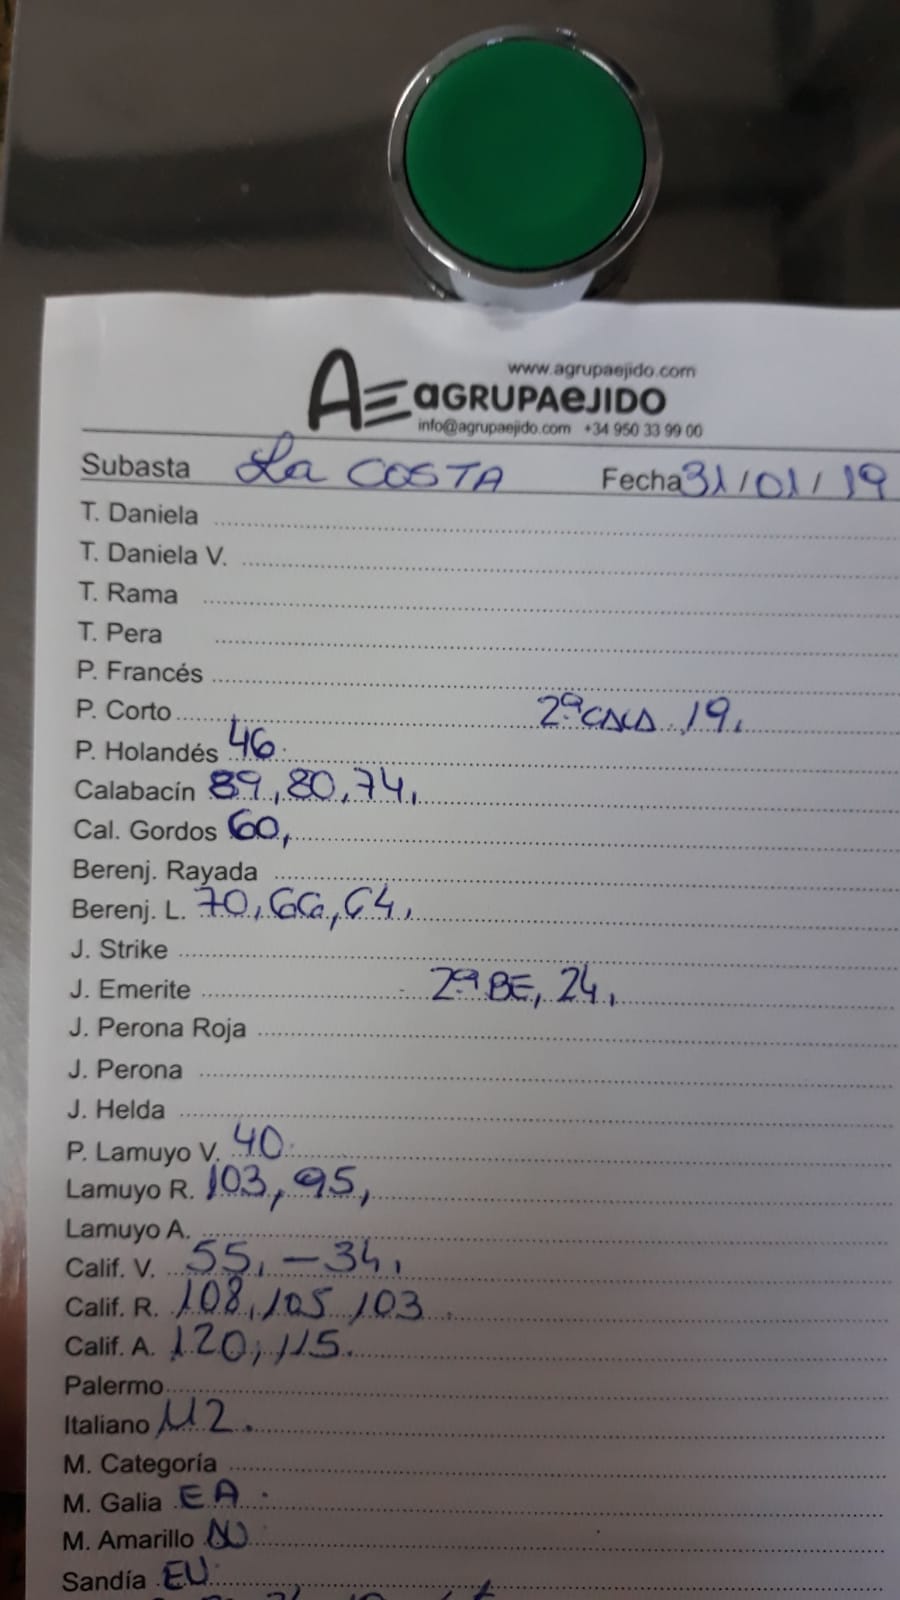 Subasta hortofrutícola AgrupaEjido La Costa 31 de Enero 2019